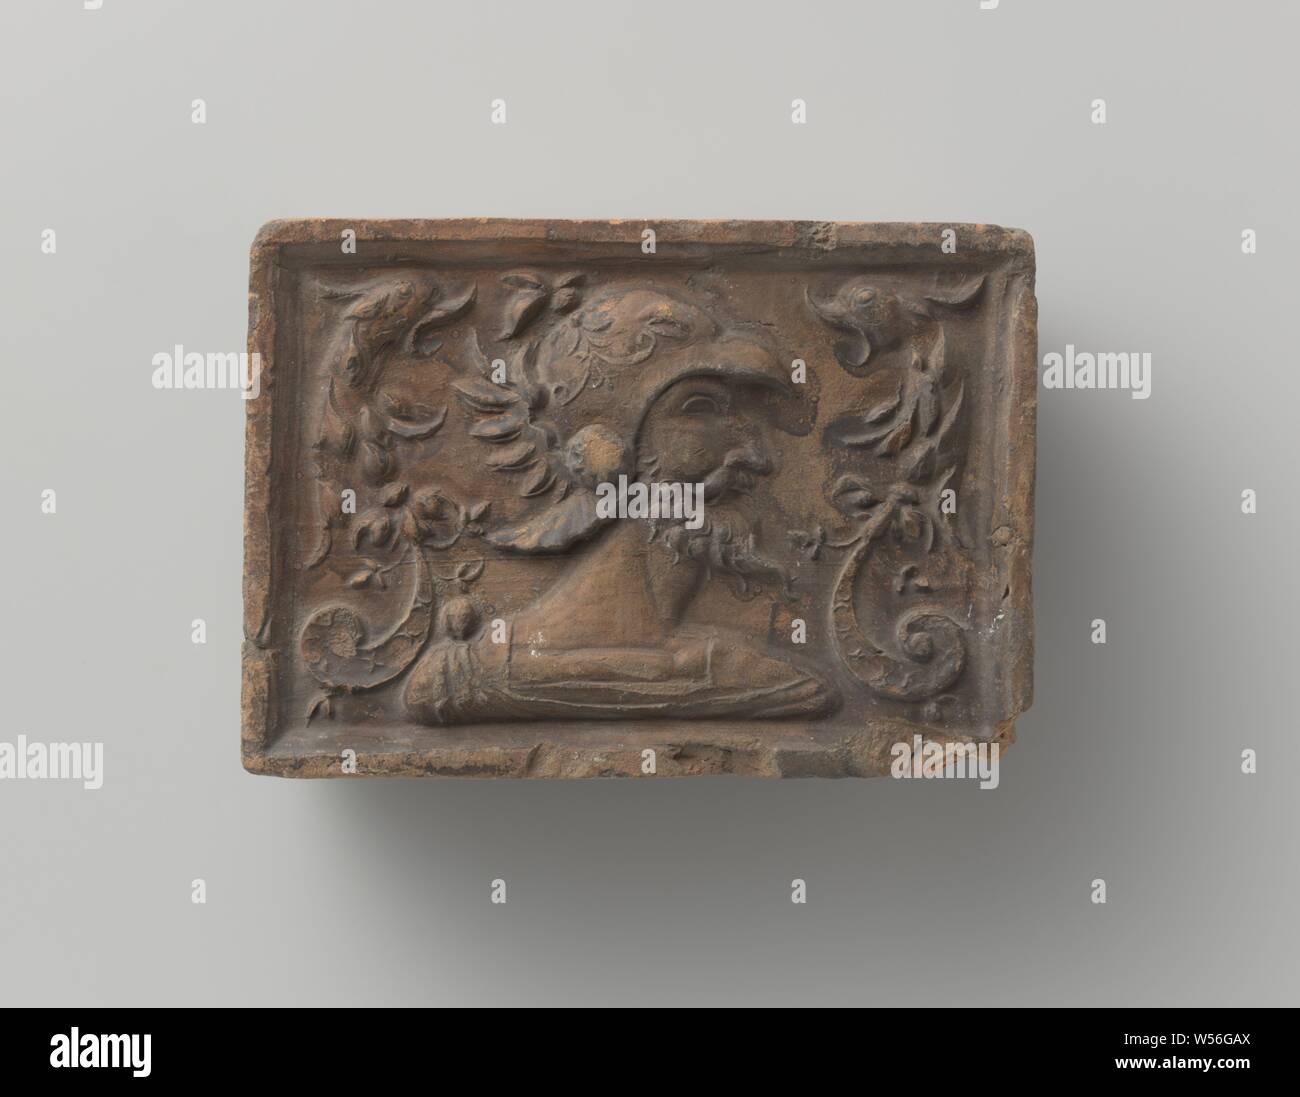 Kamin mit einem Kopf, der ein römischer Soldat mit Helm, auf der Suche nach rechts. Linken und rechten Chimären., anonym, Südlichen Niederlande, C. 1500 - C. 1600, Steingut, h 11,3 cm x W 15,6 cm x T 5,5 cm Stockfoto